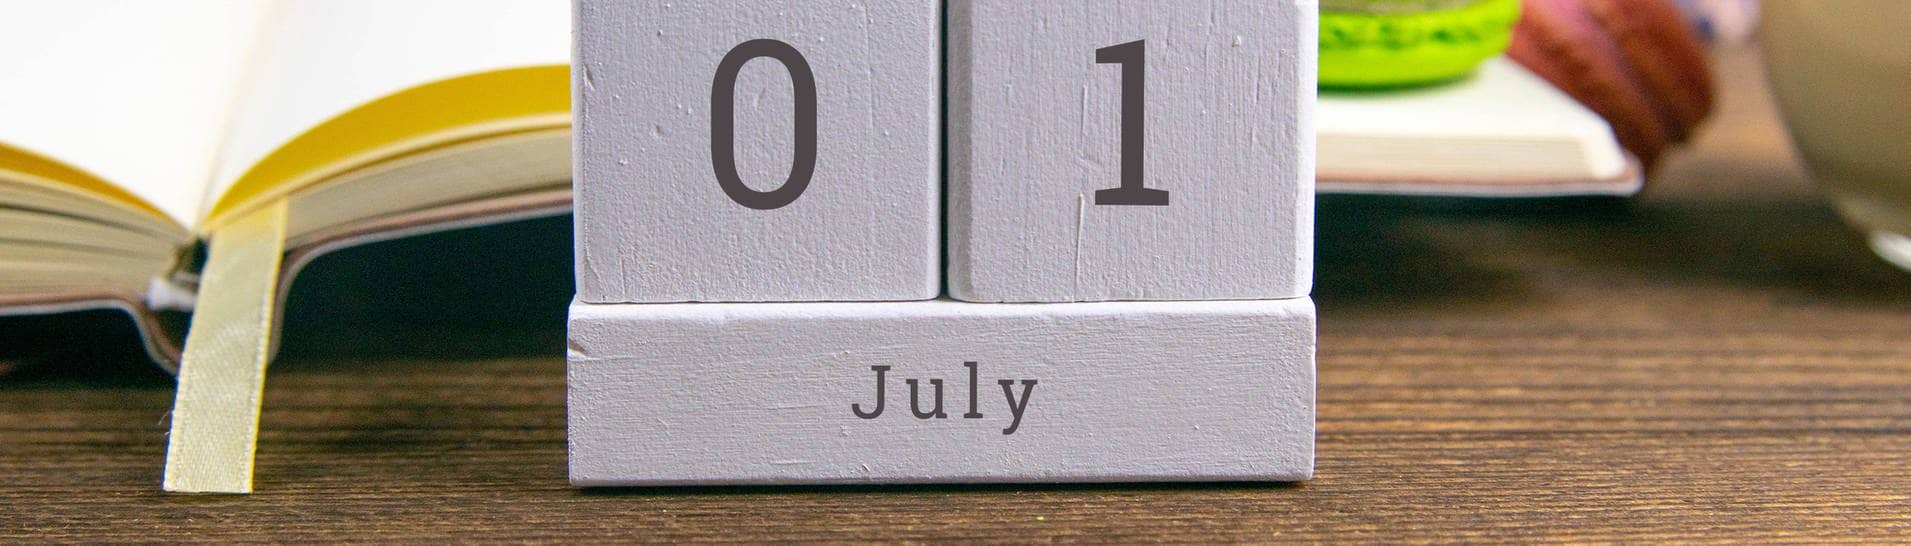 EIn Kalende raus Holz zeigt den 1. Juli als Datum an (Foto: IMAGO, IMAGO / Panthermedia)